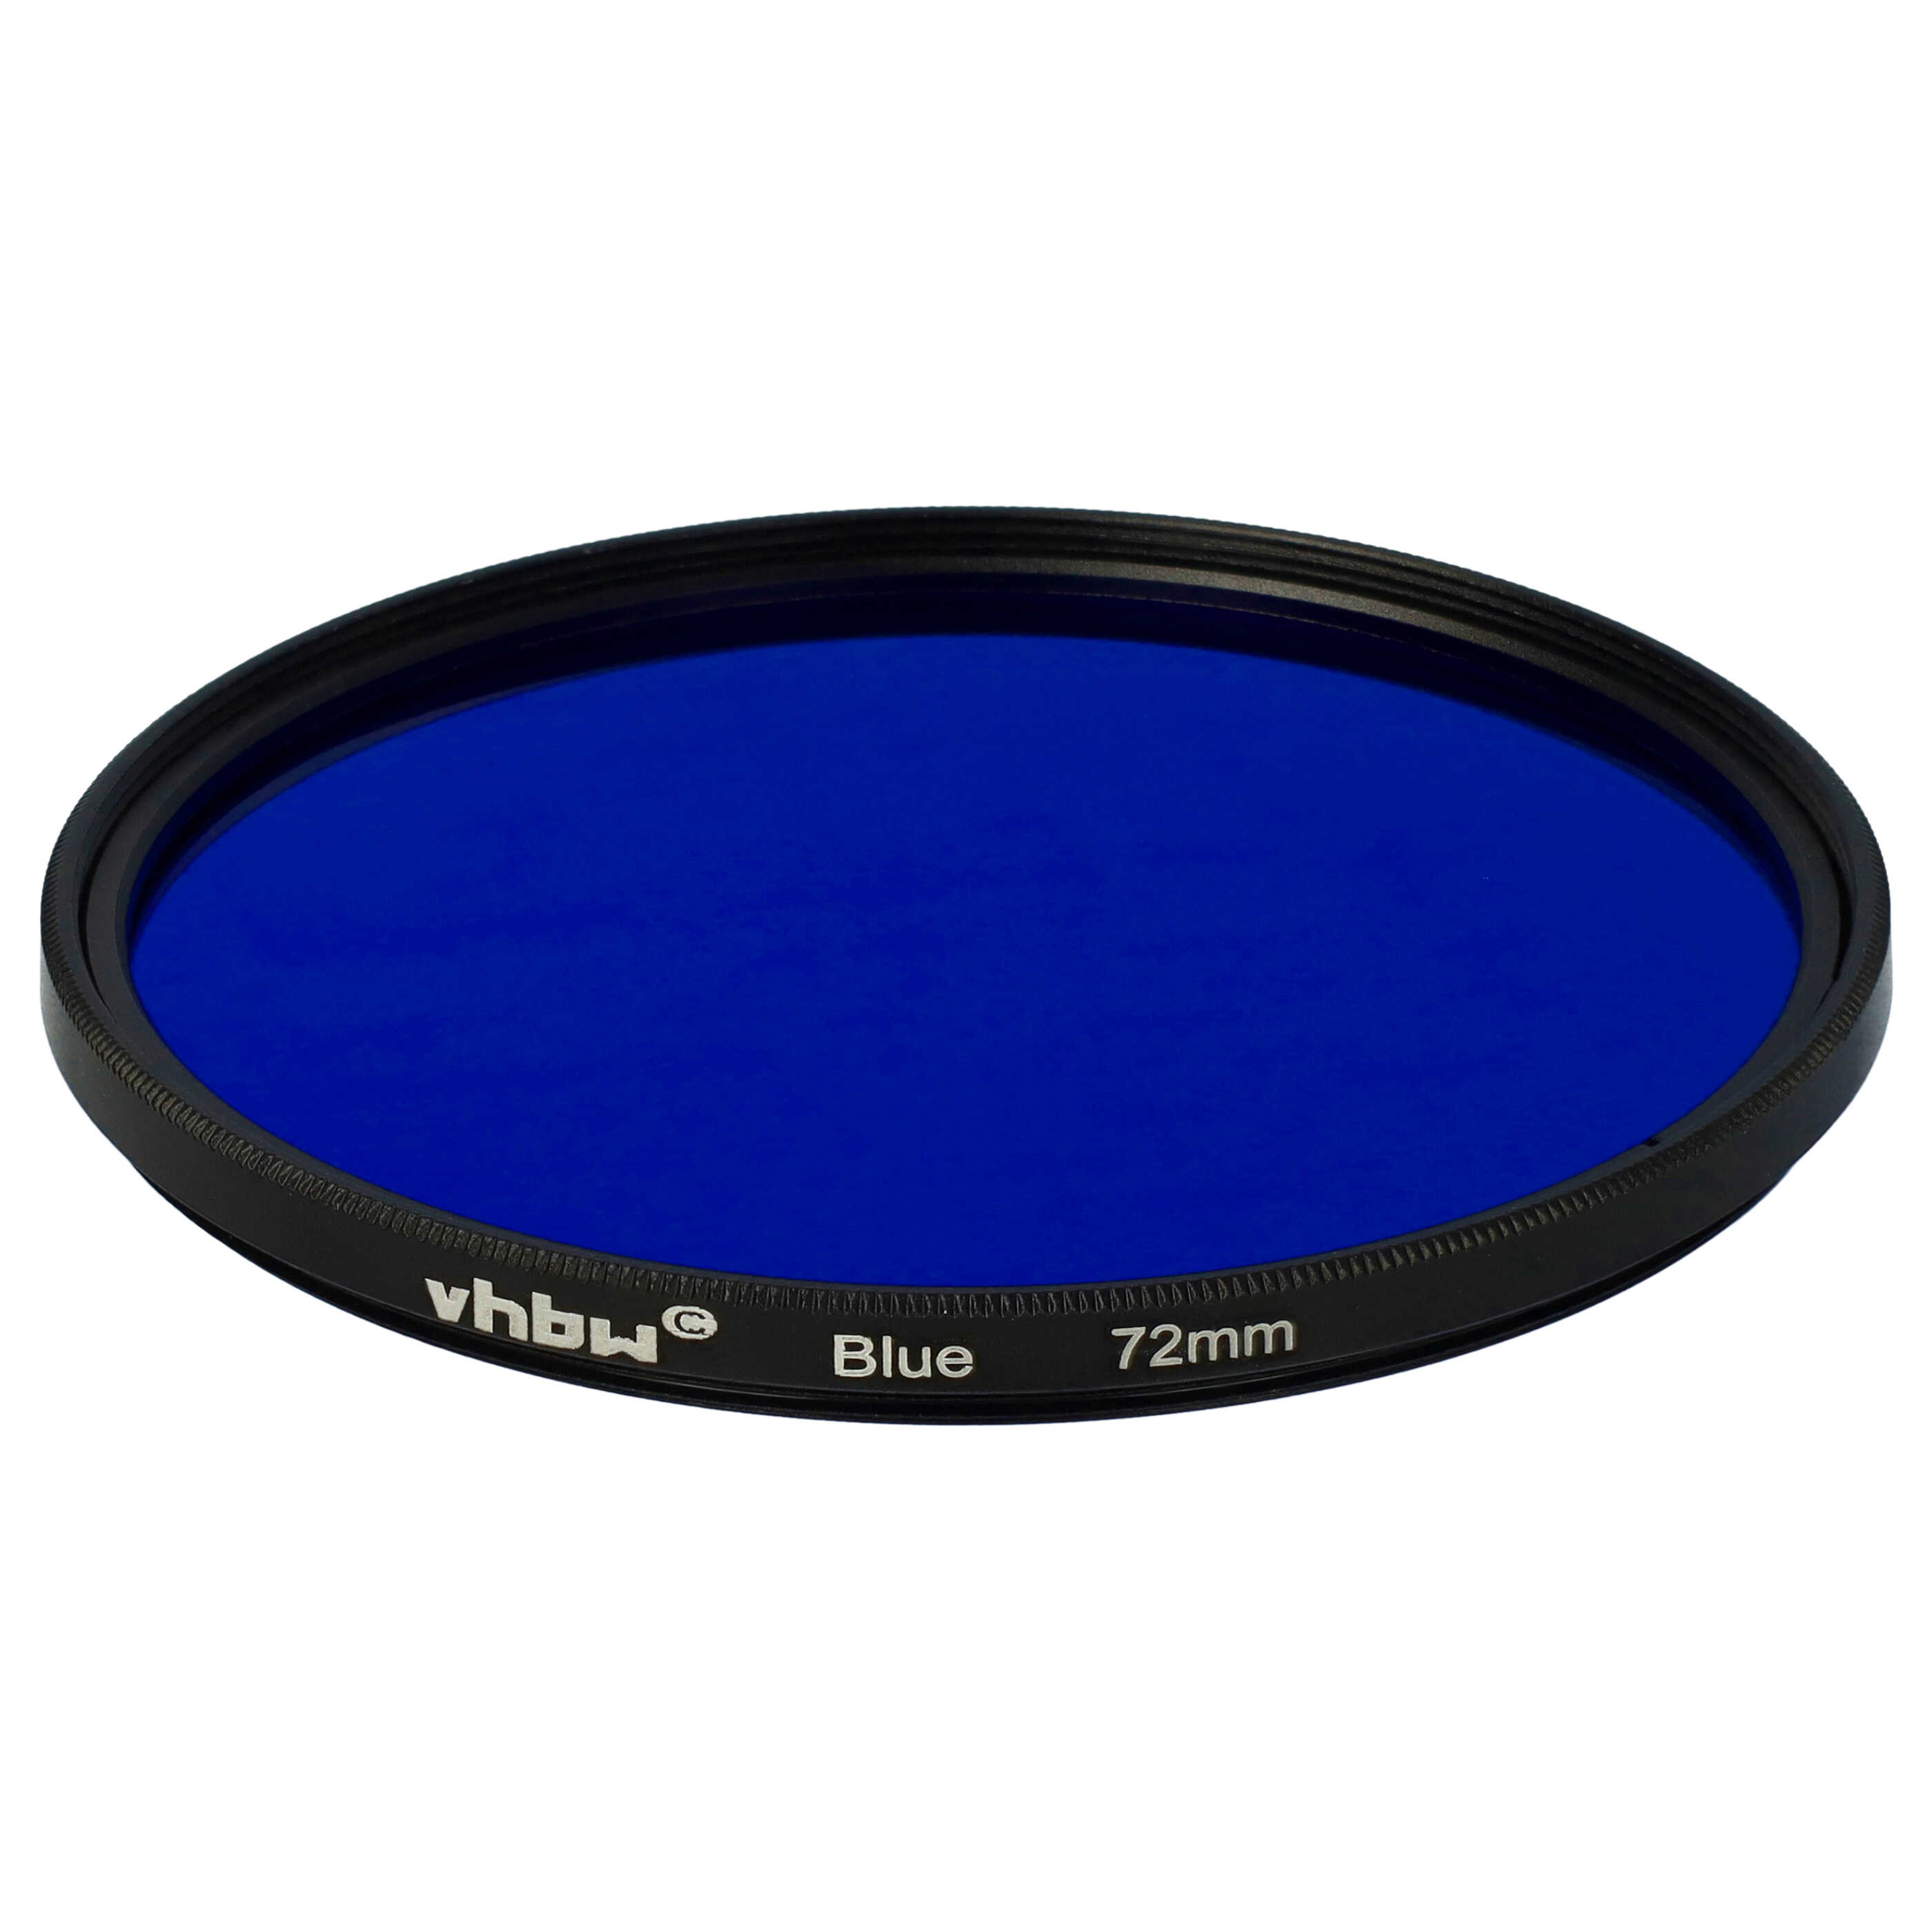 Farbfilter blau passend für Kamera Objektive mit 72 mm Filtergewinde - Blaufilter